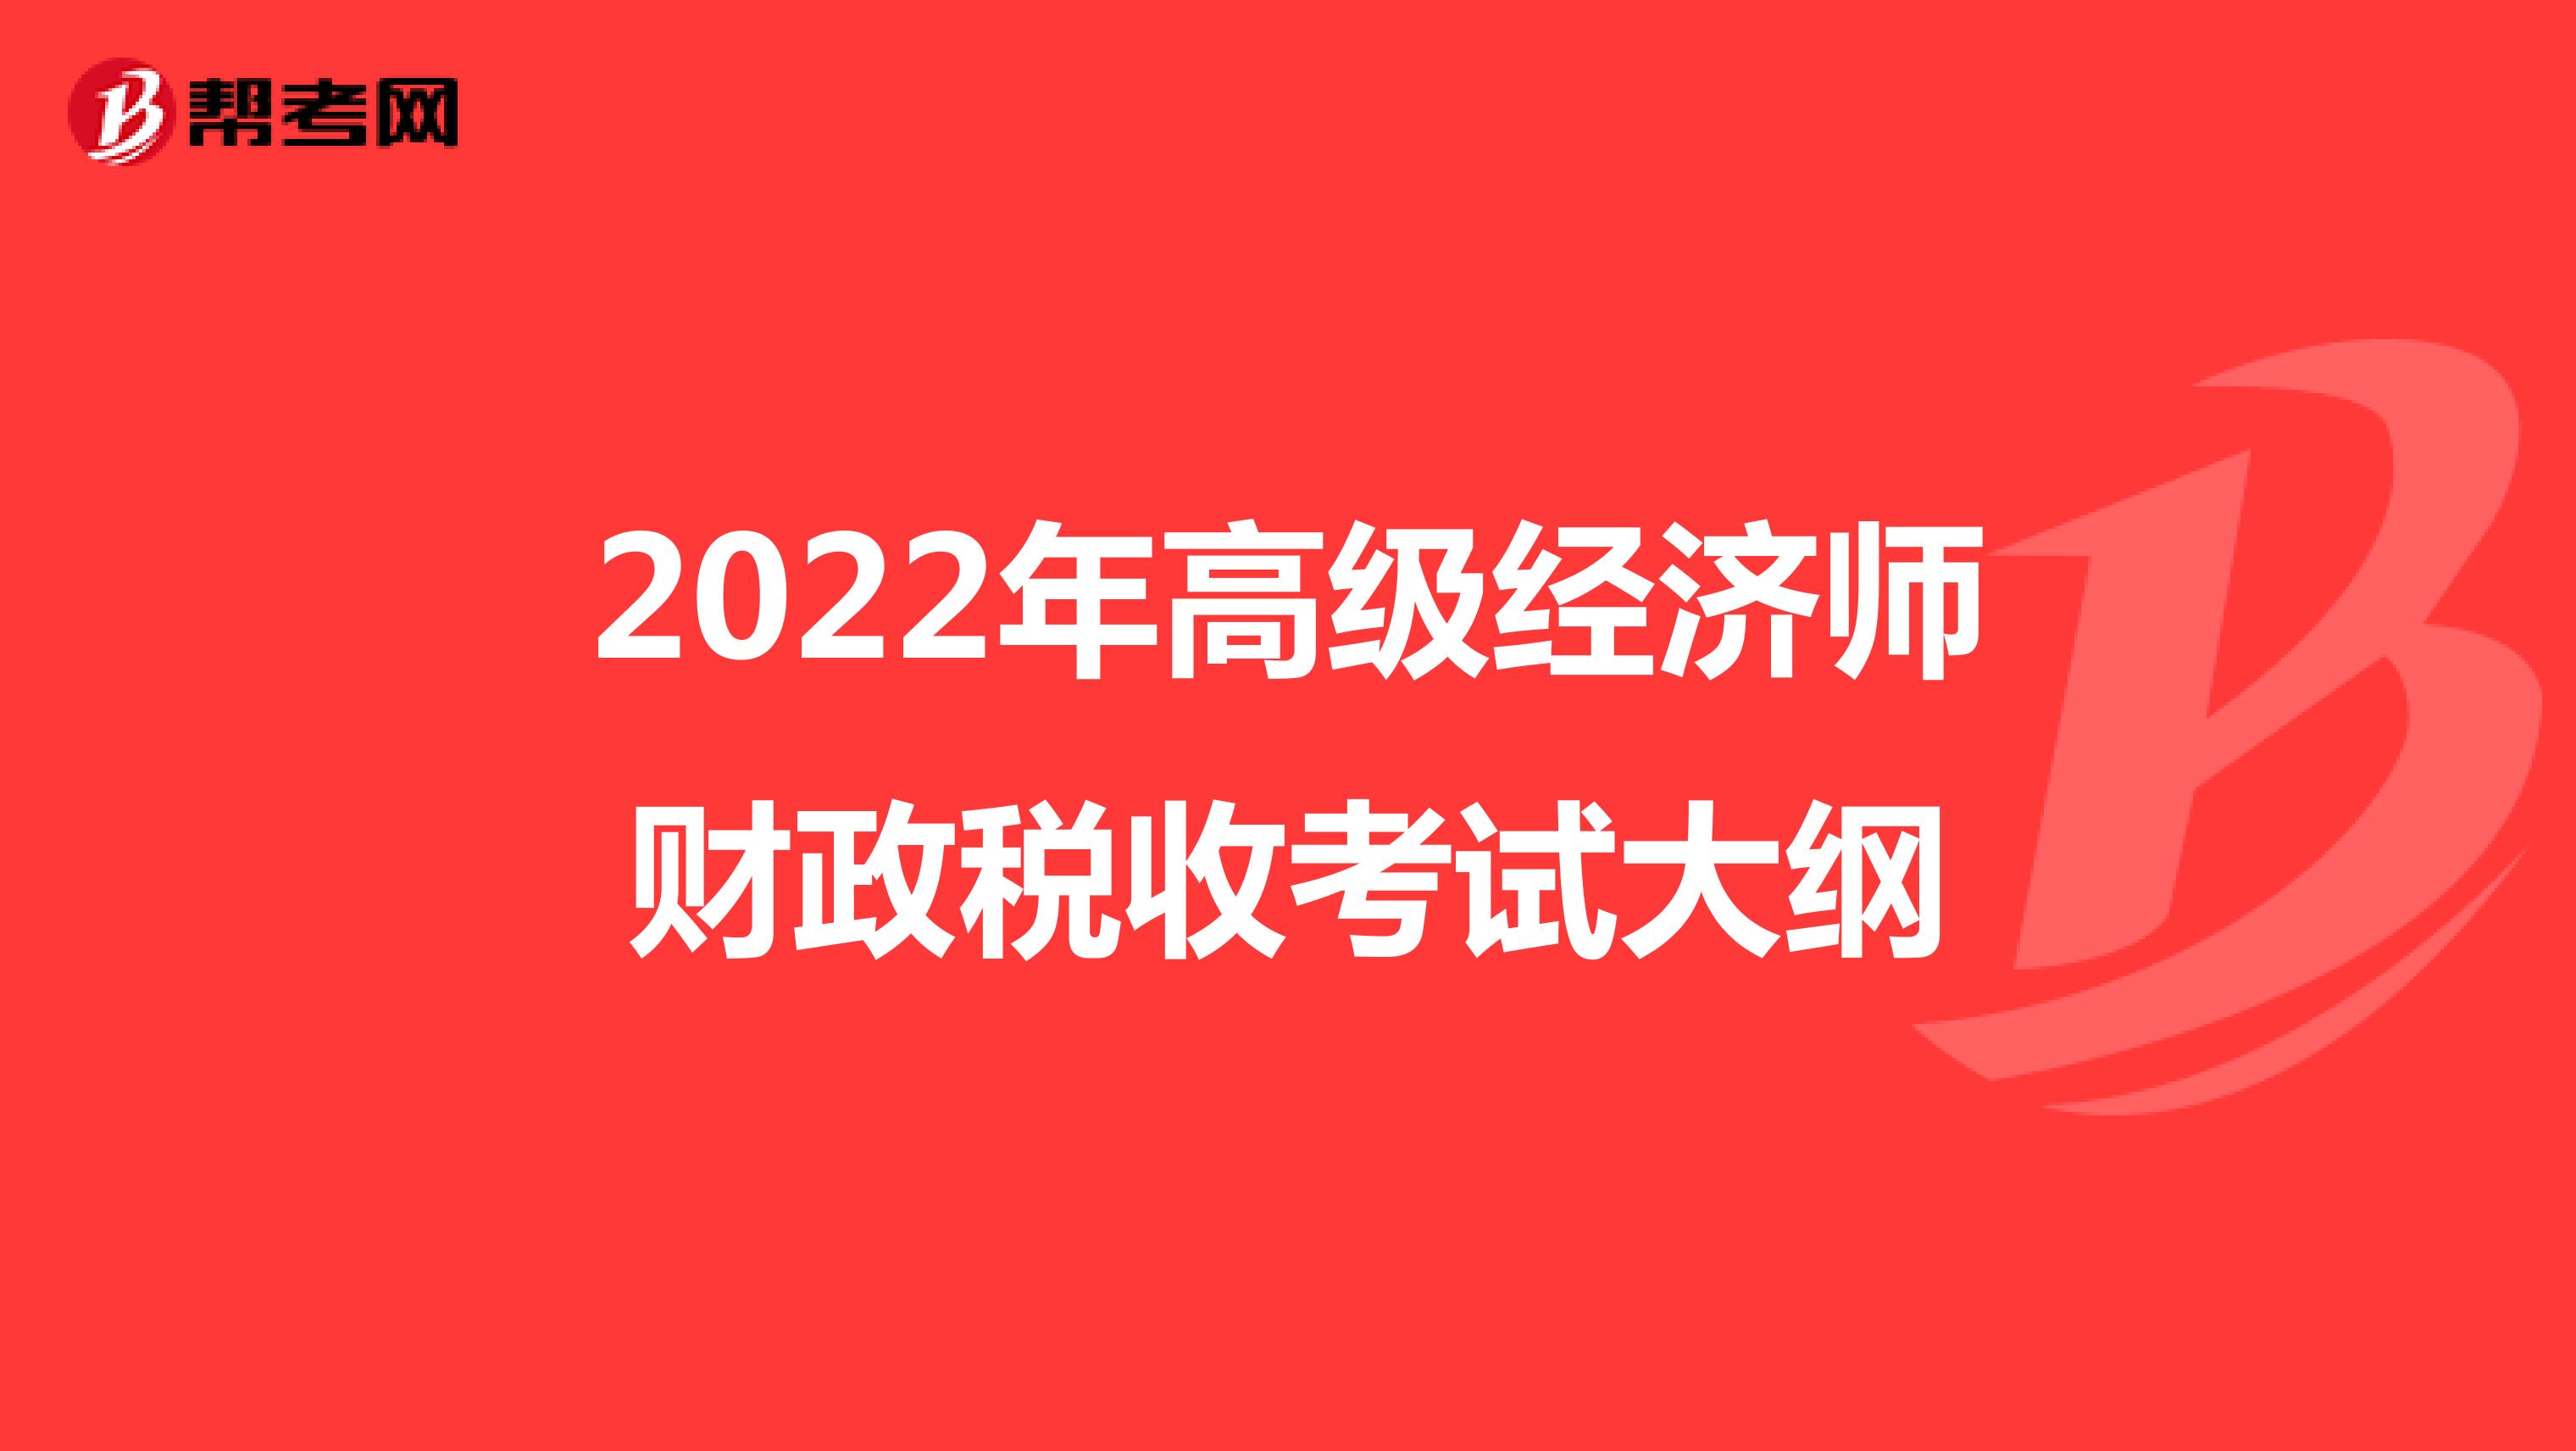 2022年高级经济师财政税收考试大纲